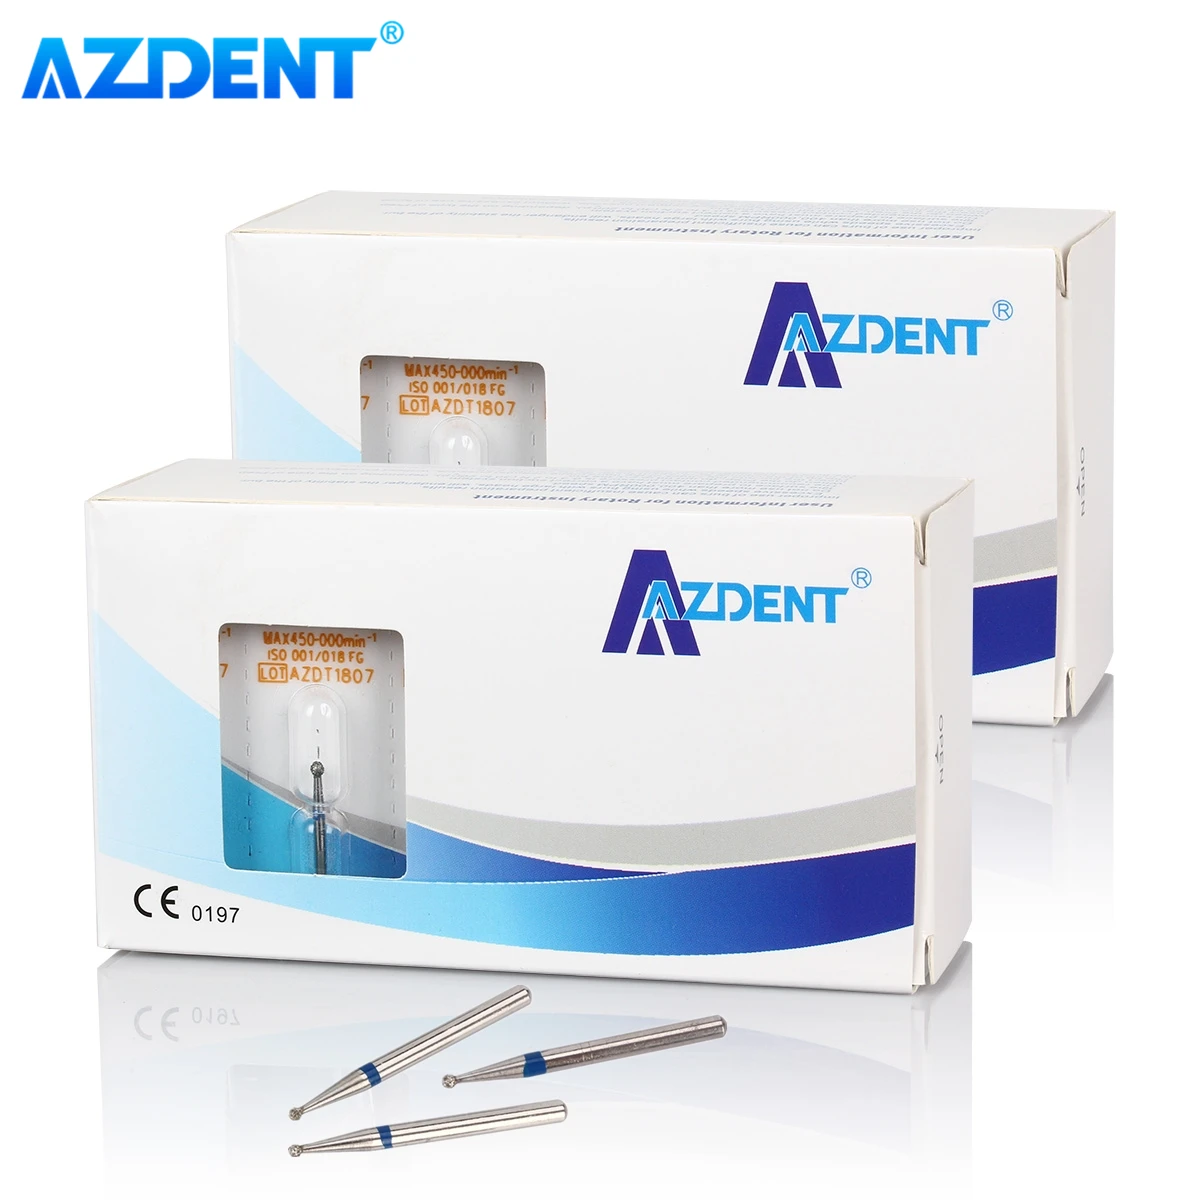 

100PCS AZDENT Dental Diamond Burs Medium Drill FG 1.6mm Bur for High Speed Turbine Handpiece Dentistry Tools for Dentists